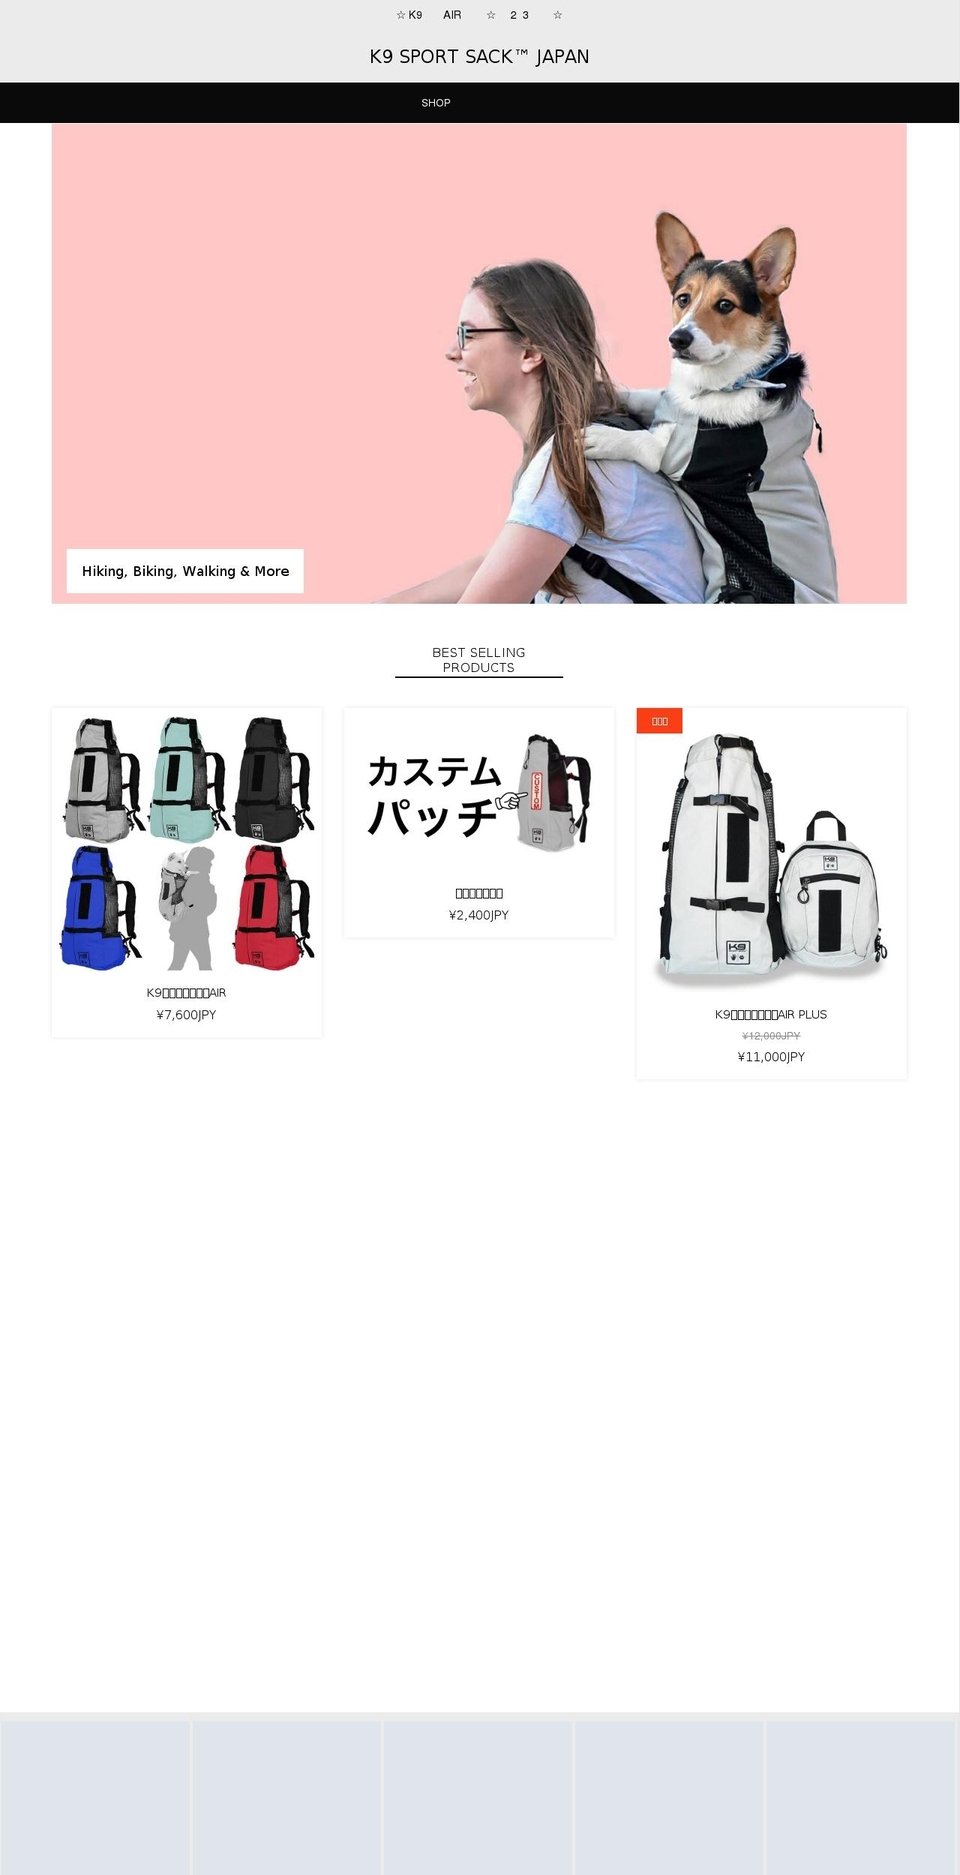 k9sportsack.jp shopify website screenshot